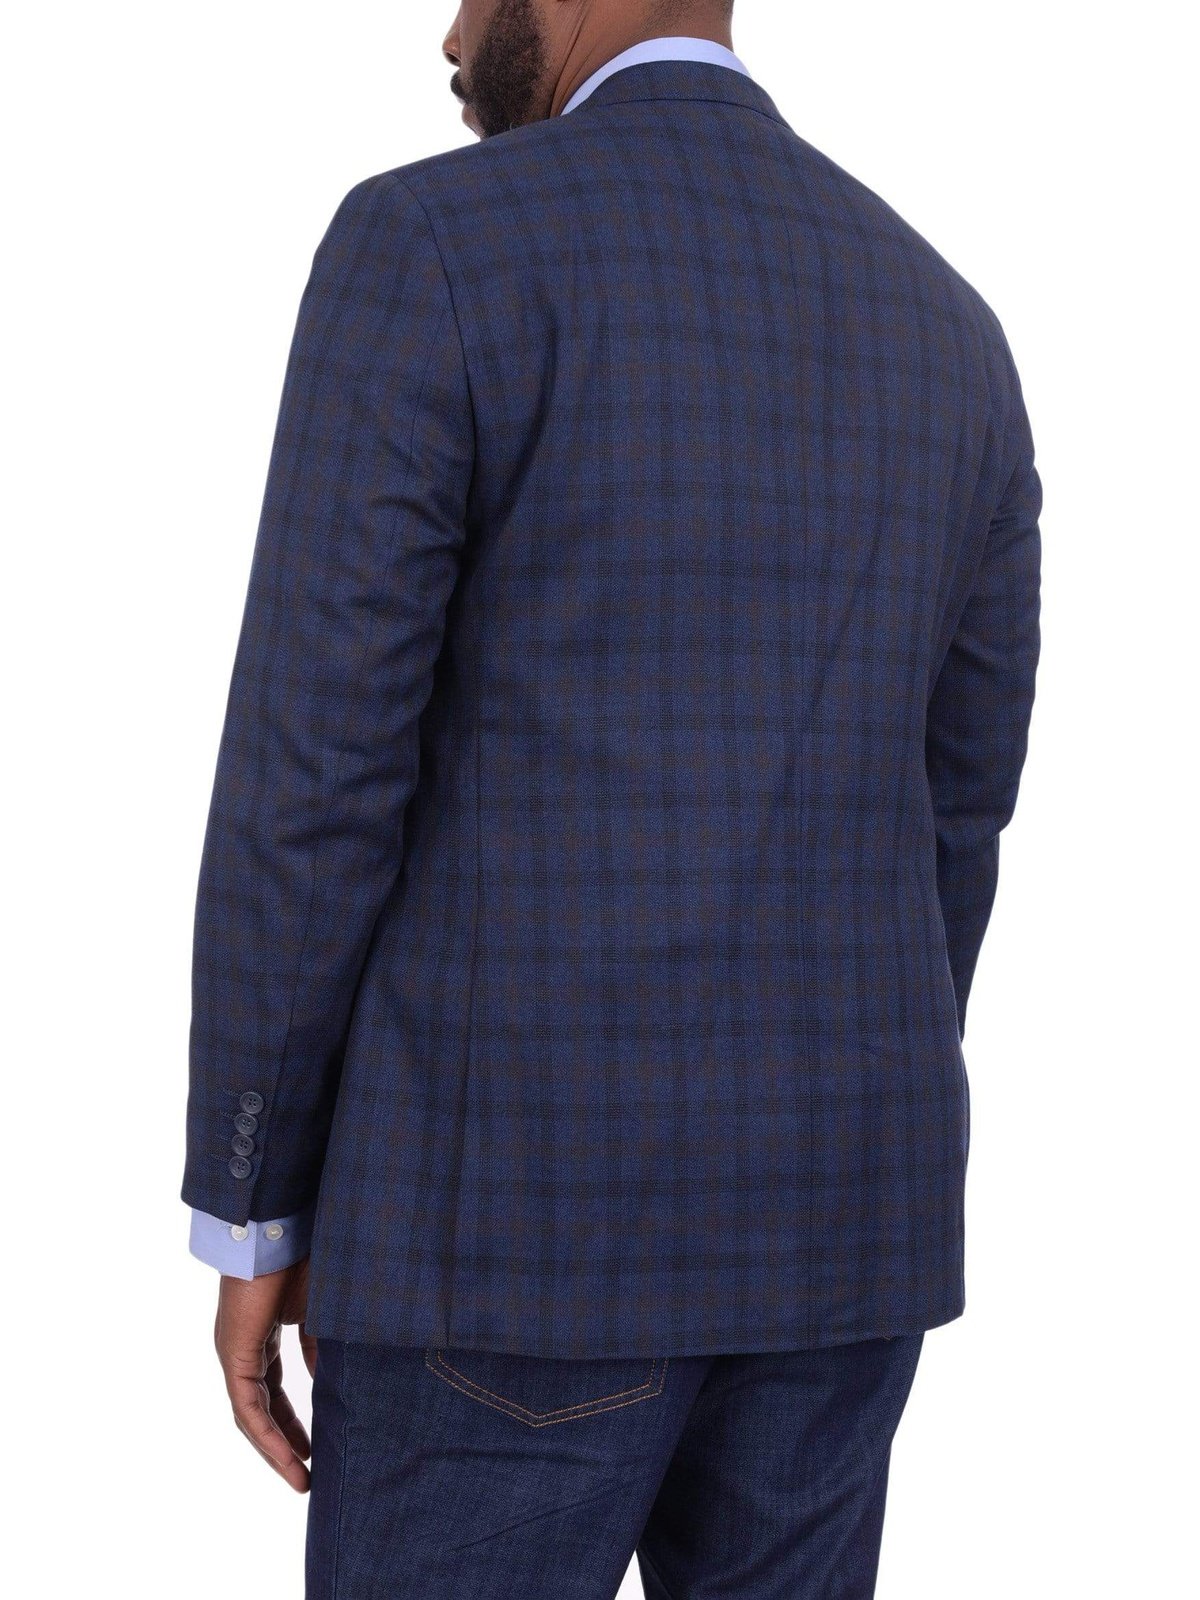 Bertollini BLAZERS Mens Regular Fit Blue & Brown Plaid Two Button Wool Silk Blend Blazer Sportcoat